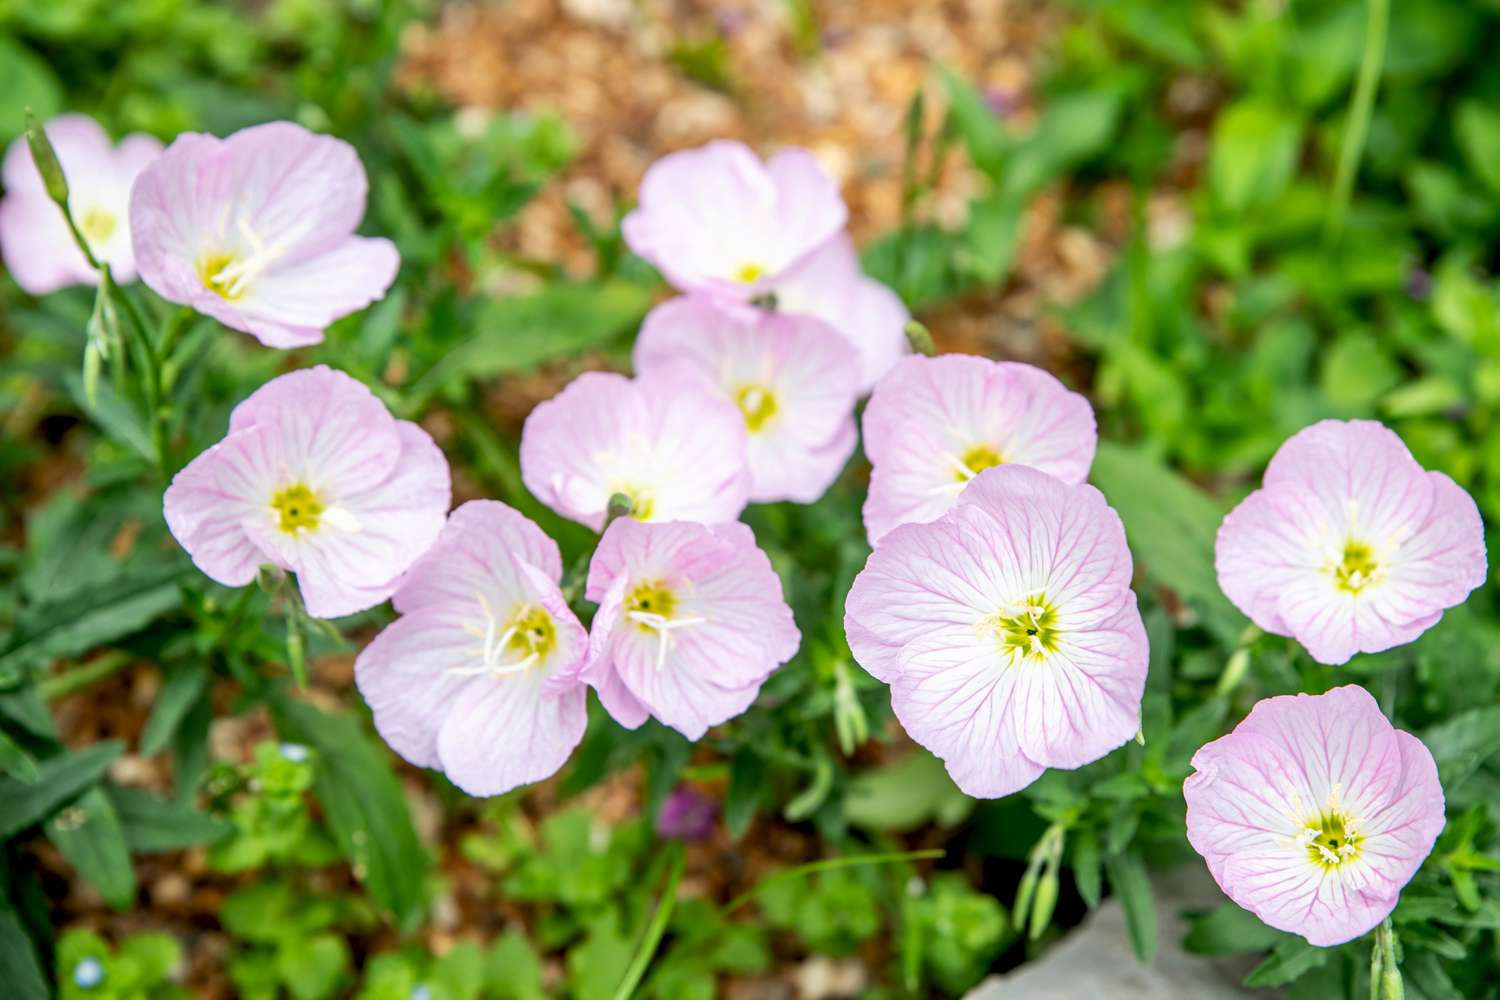 Flores de onagra rosa con pétalos superpuestos de color rosa pálido y blanco con centros de color amarillo verdoso